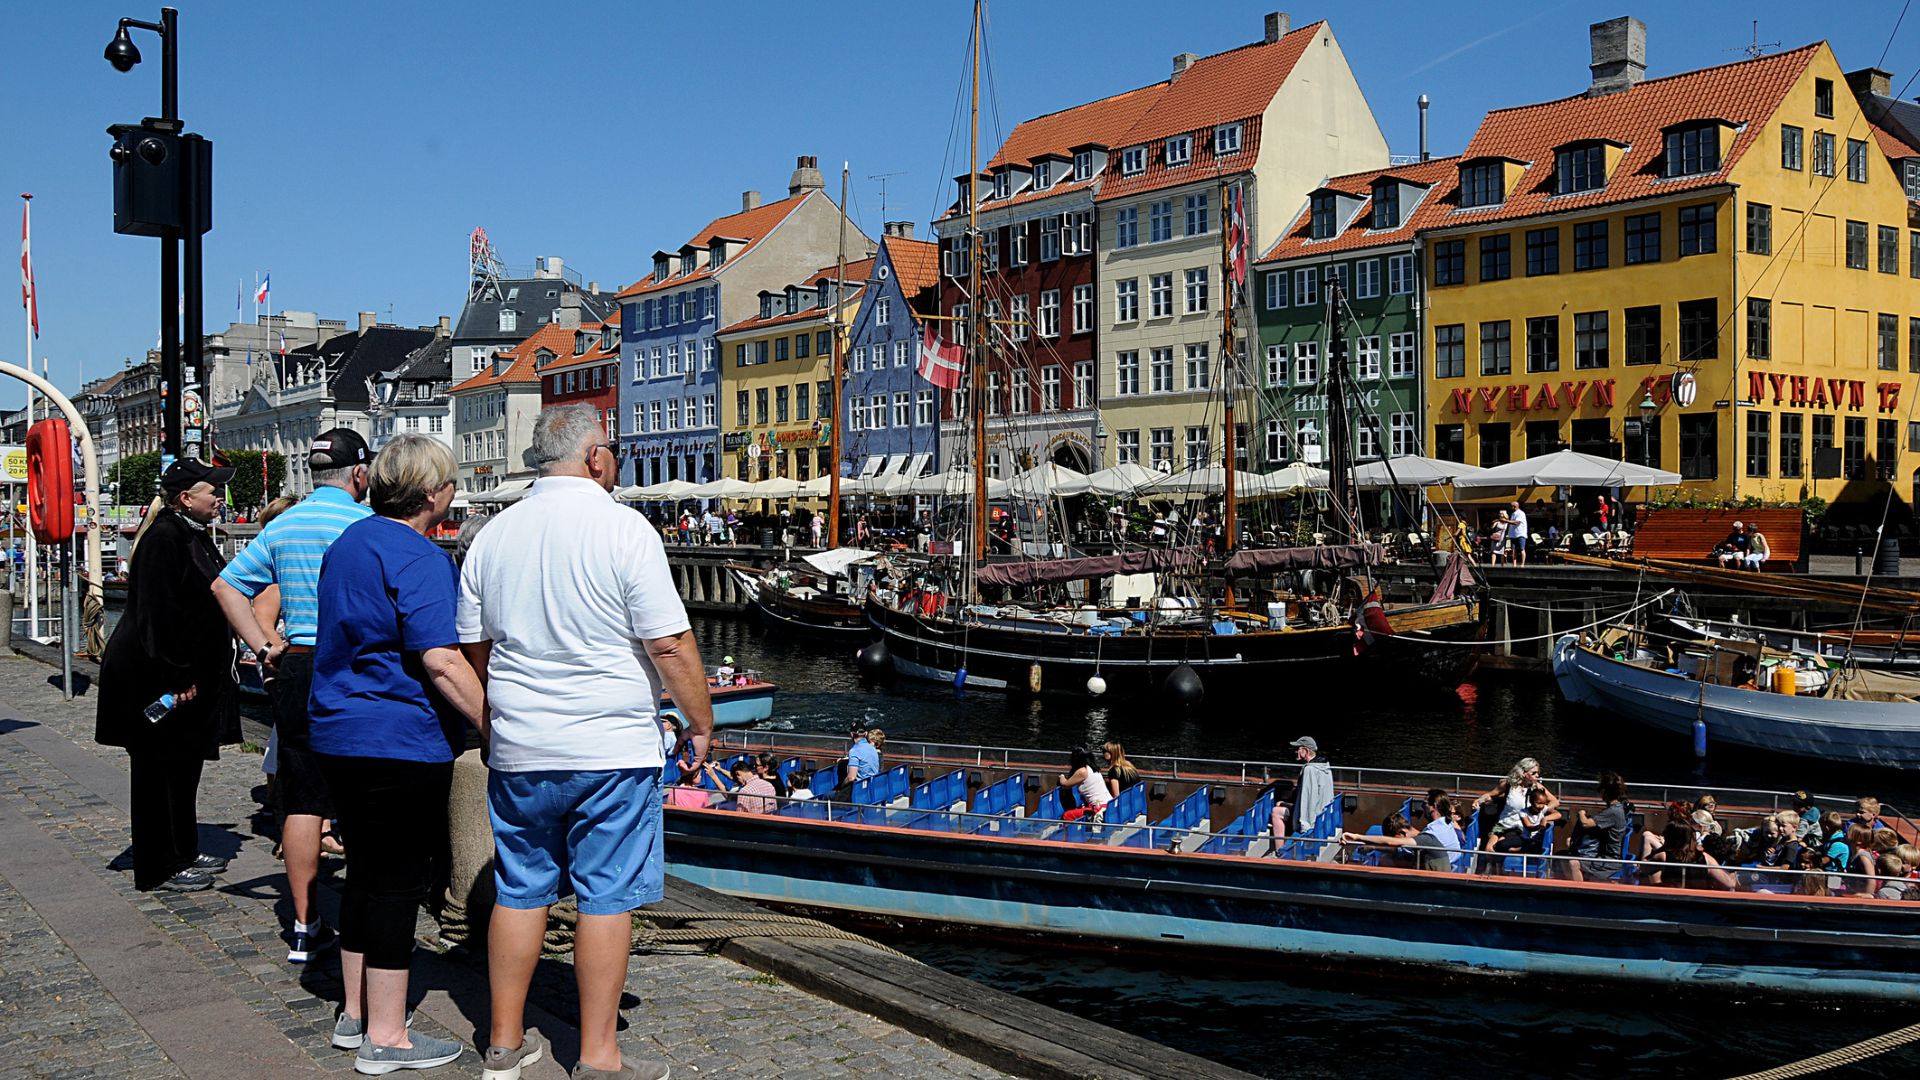 Danskernes rejselyst er større end nogensinde. Det kan aflæses i rejseprognosen for 2023, hvor ni ud af 10 danskere forventer at tage på ferie. Og selvom udlængslen er stor, holder mange fast i Danmark som ferieland. 79 % af danskerne forventer at tage på ferie i udlandet, mens 39 % forventer at holde ferie i Danmark i 2023. (Arkivfoto: Deanpictures/Dreamstime)